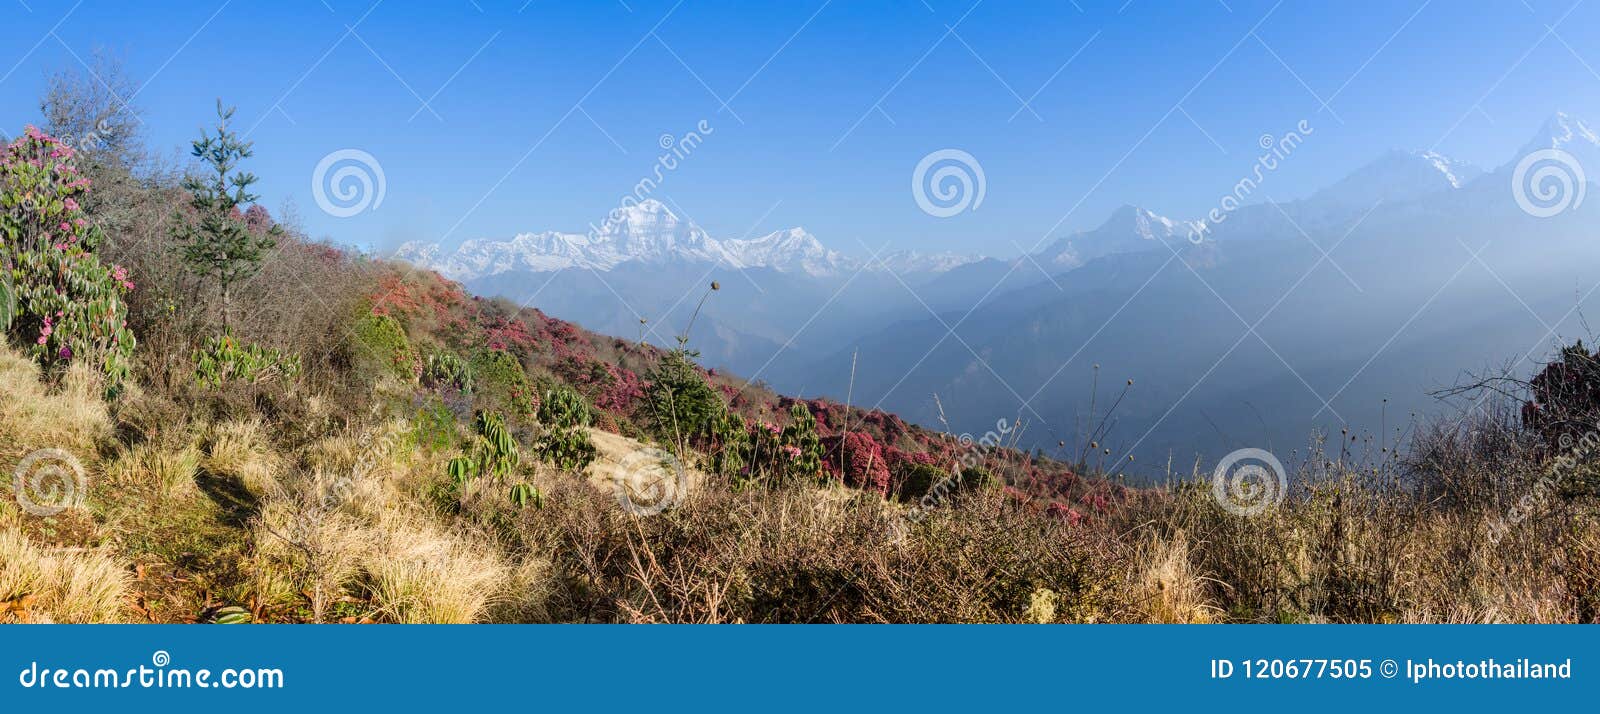 Paysage De Lhimalaya Chaîne De Montagne Image Stock Image